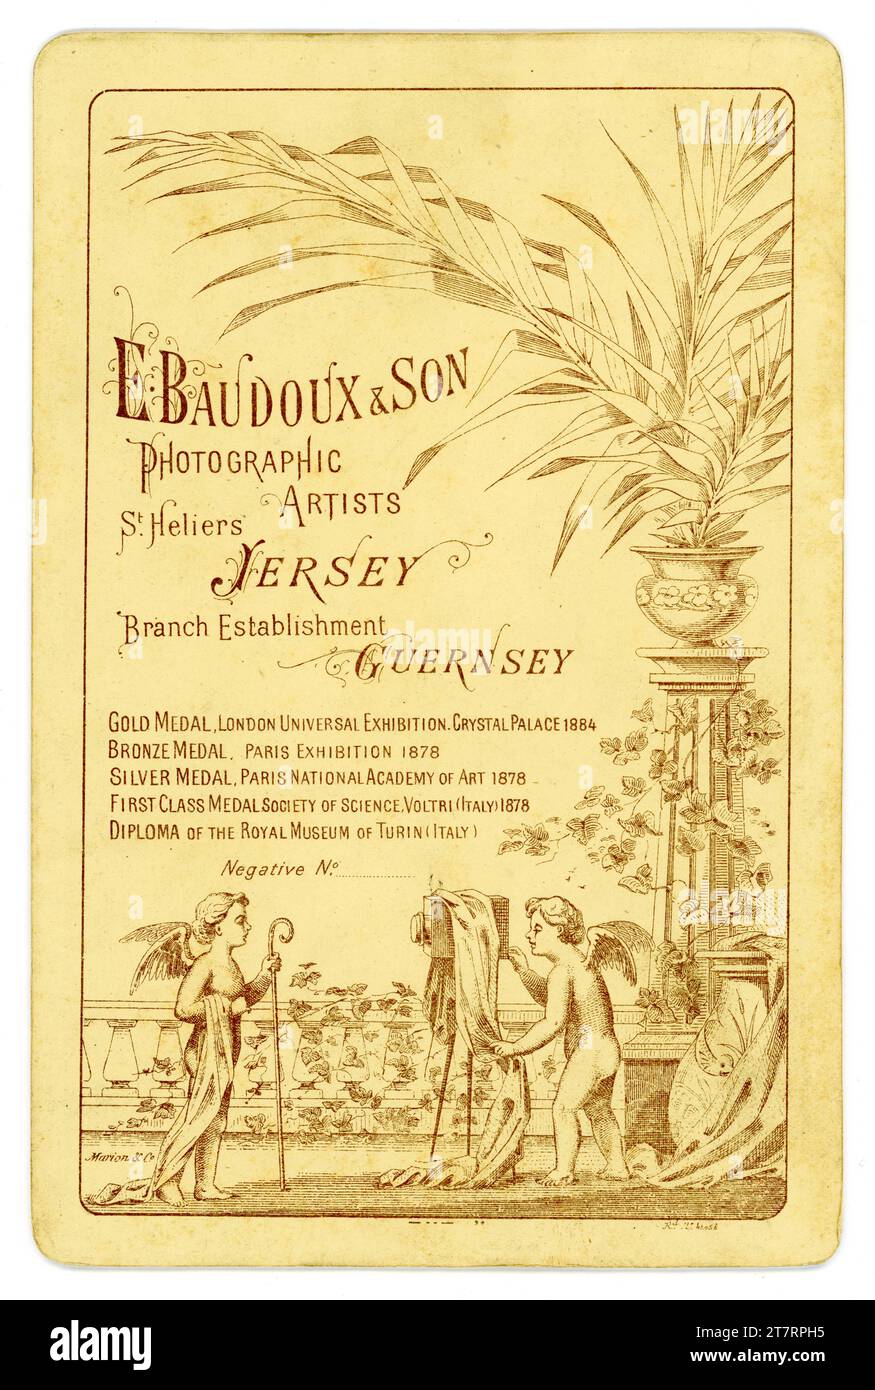 Originale, aufwendig illustrierte Rückseite einer viktorianischen Schrankkarte mit Kuppiden und Palmen. Wirbt für das Studio des bekannten Inselfotografen der damaligen Zeit, Ernest Baudoux & Son (der Sohn kam 1885 zu ihm), St. Helier, Jersey, die Kanalinseln. Datiert auf 1885, 1886 oder 1887. Stockfoto